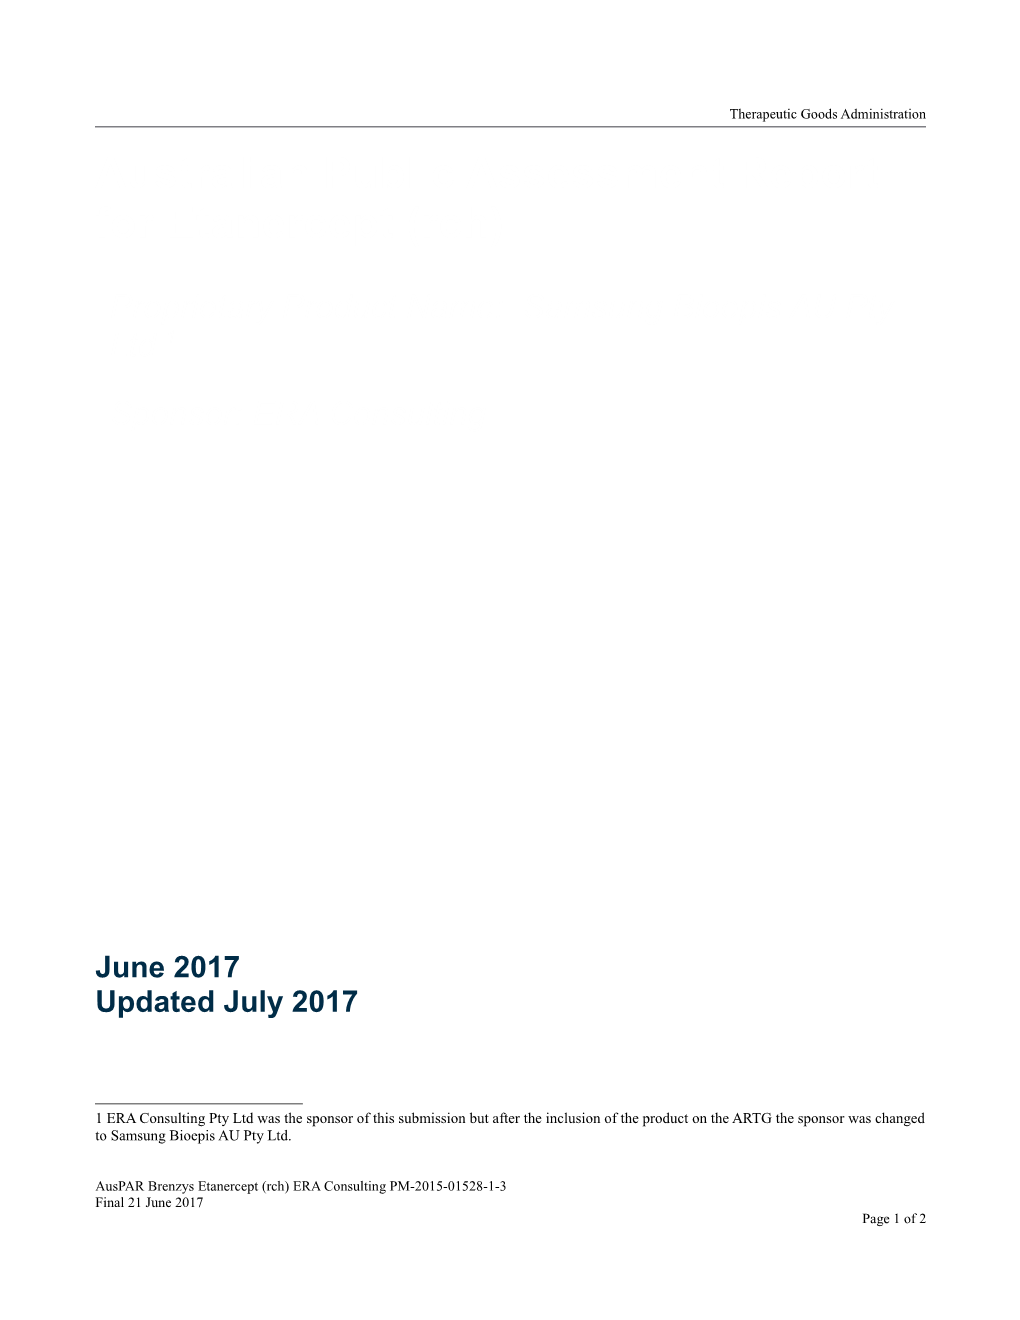 Australian Public Assessment Report for Etanercept (Rch)